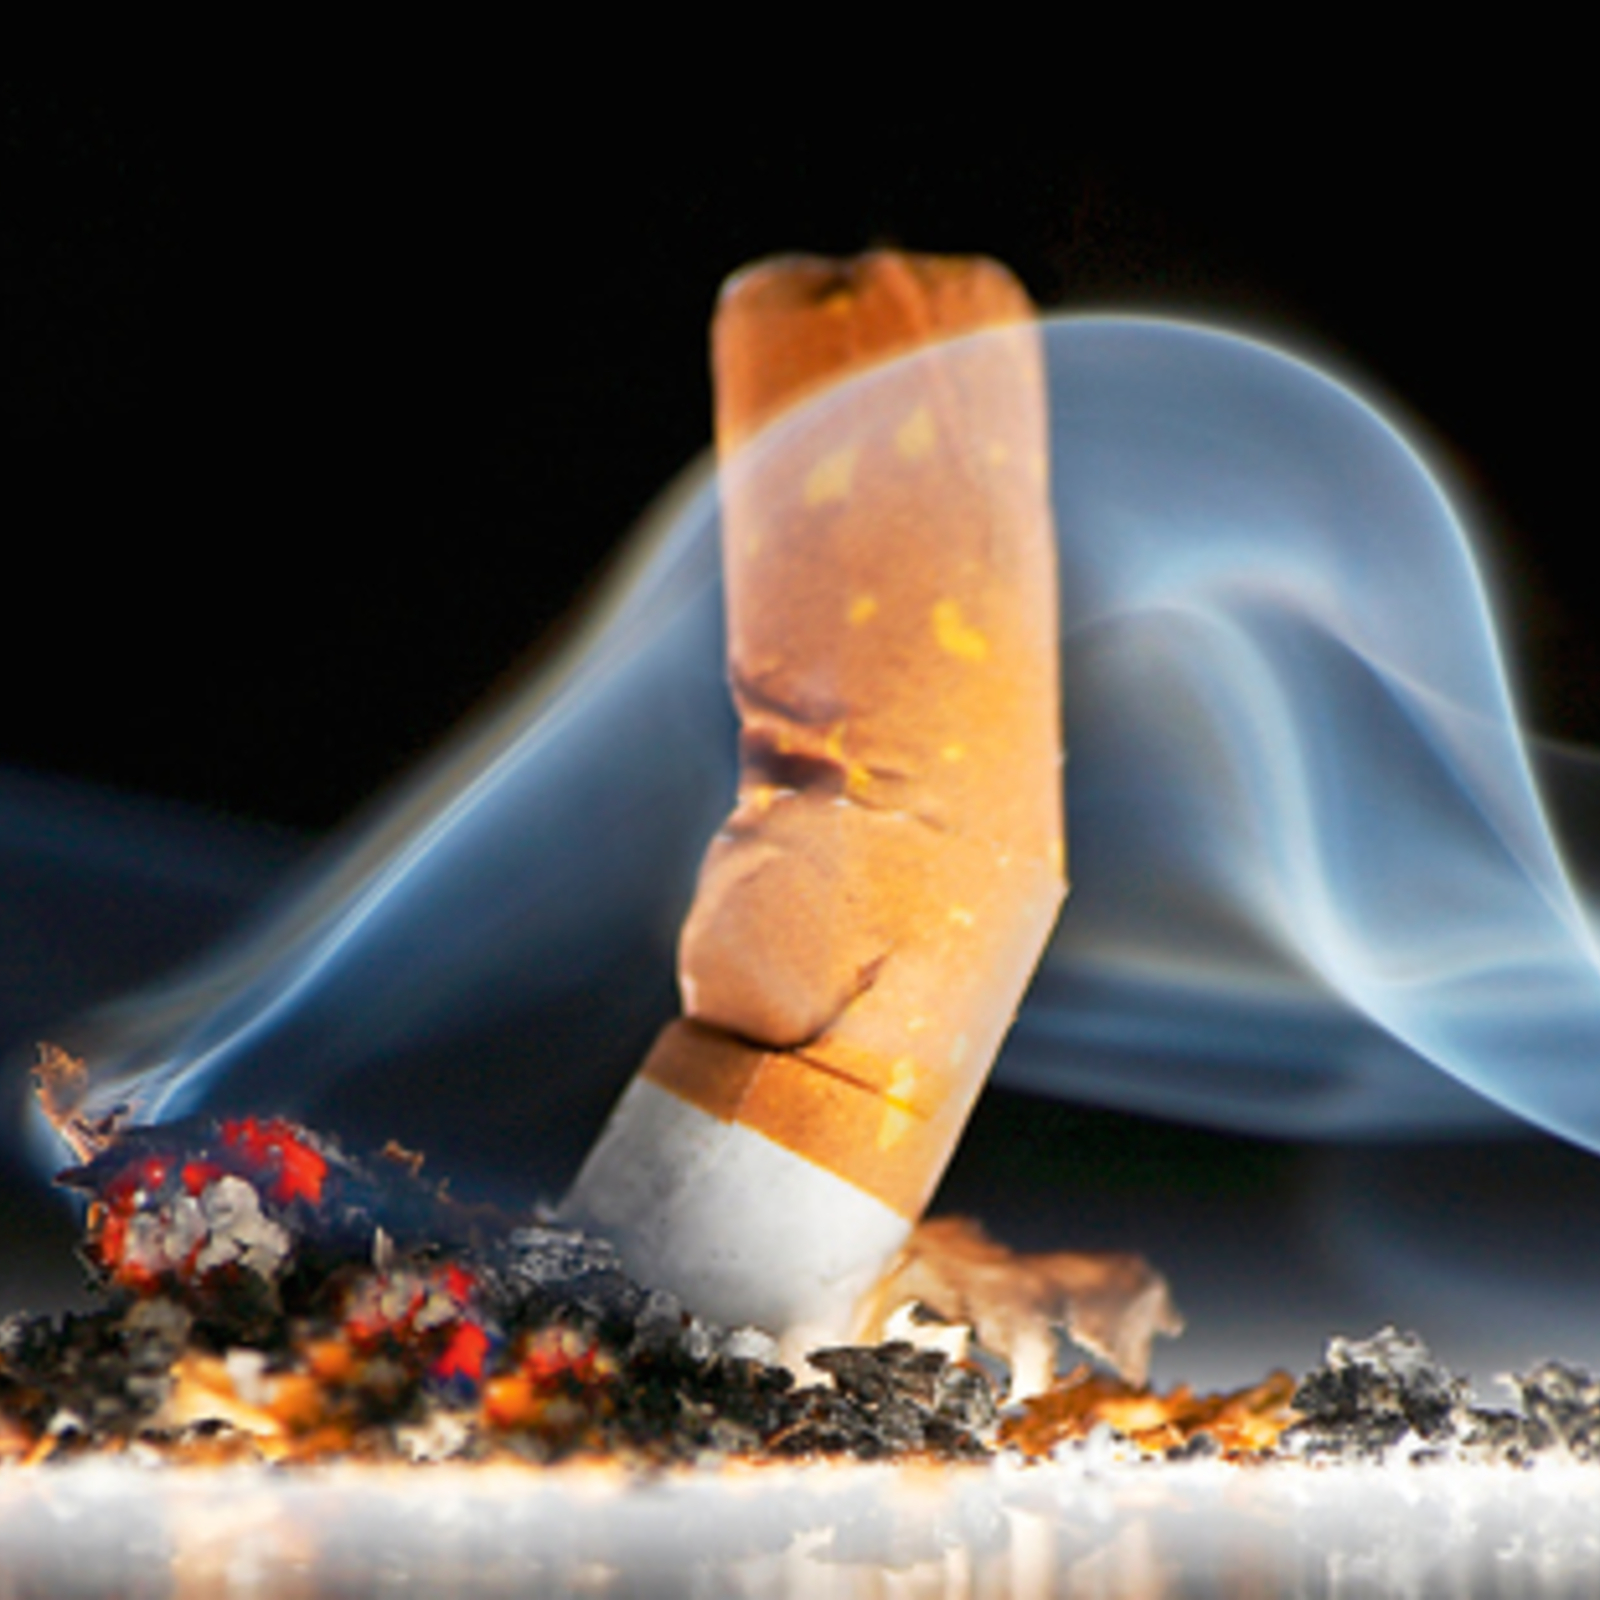 Gewaltiger Rückschritt“ – Neuseeland will Anti-Tabak-Gesetz kippen